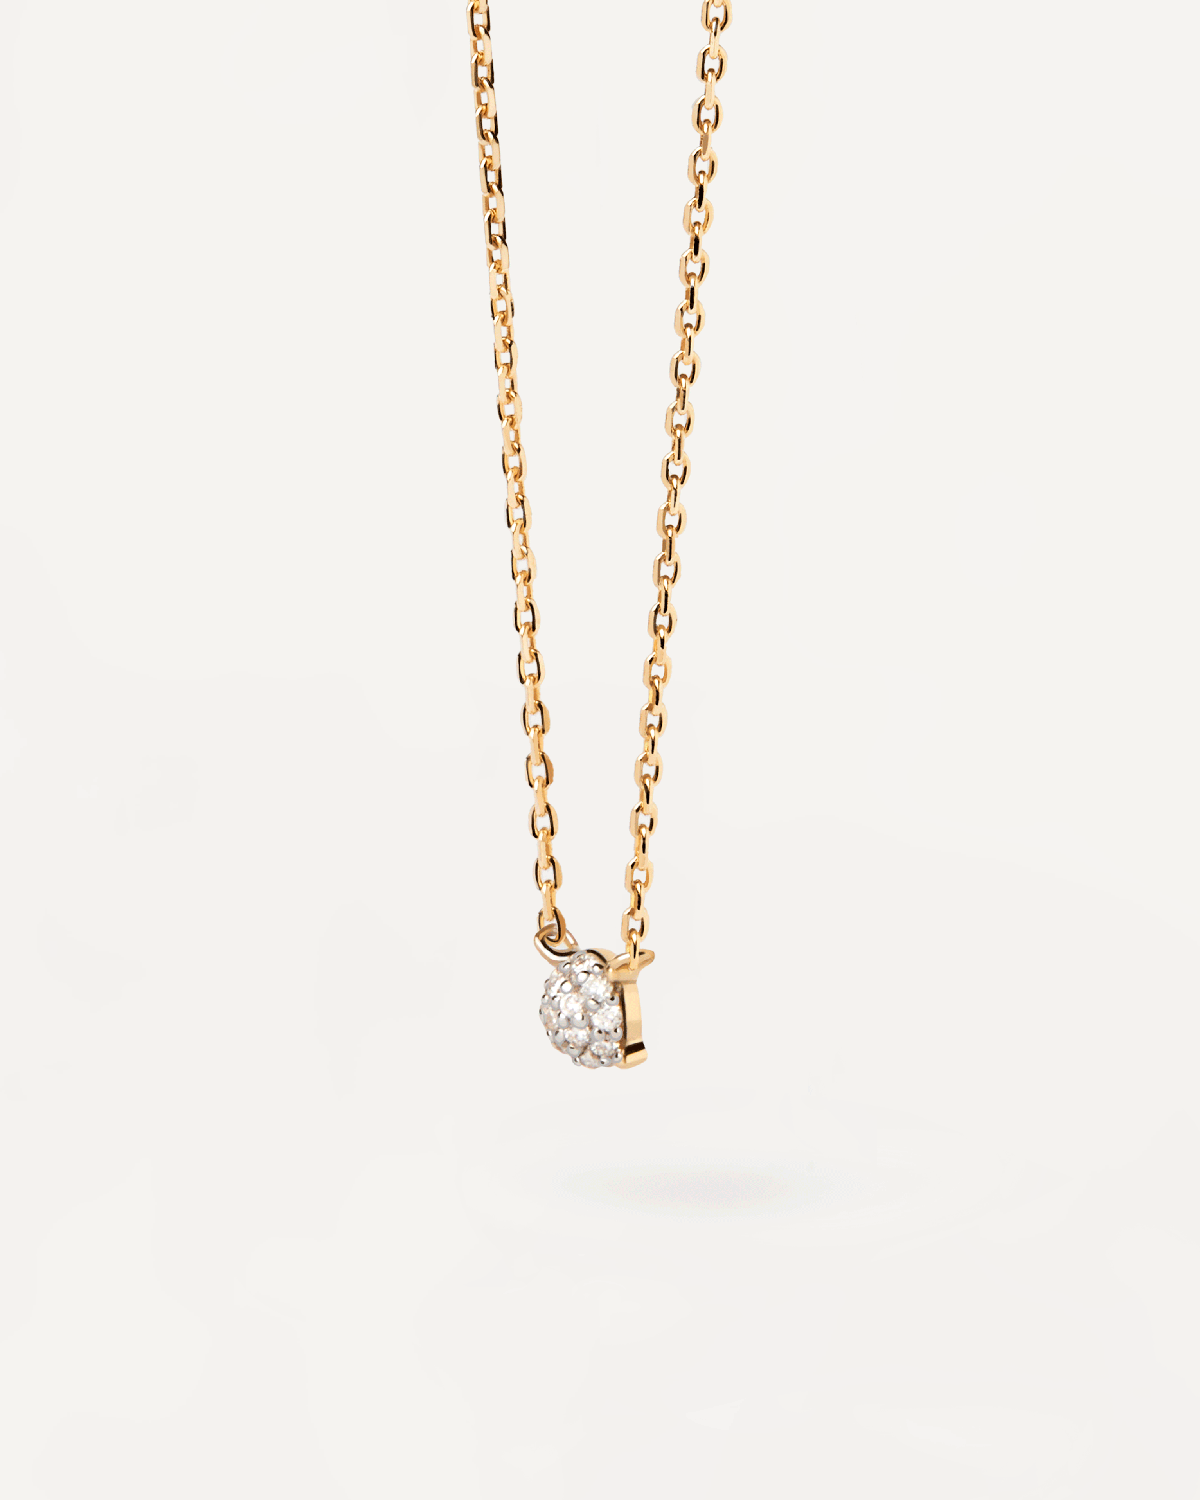 Dona Solitär-halskette aus gold mit diamanten. Solitär-Halskette aus massivem Gelbgold mit vierzackigen Laborgezüchtete Pavé-Diamanten. Erhalten Sie die neuesten Produkte von PDPAOLA. Geben Sie Ihre Bestellung sicher auf und erhalten Sie diesen Bestseller.